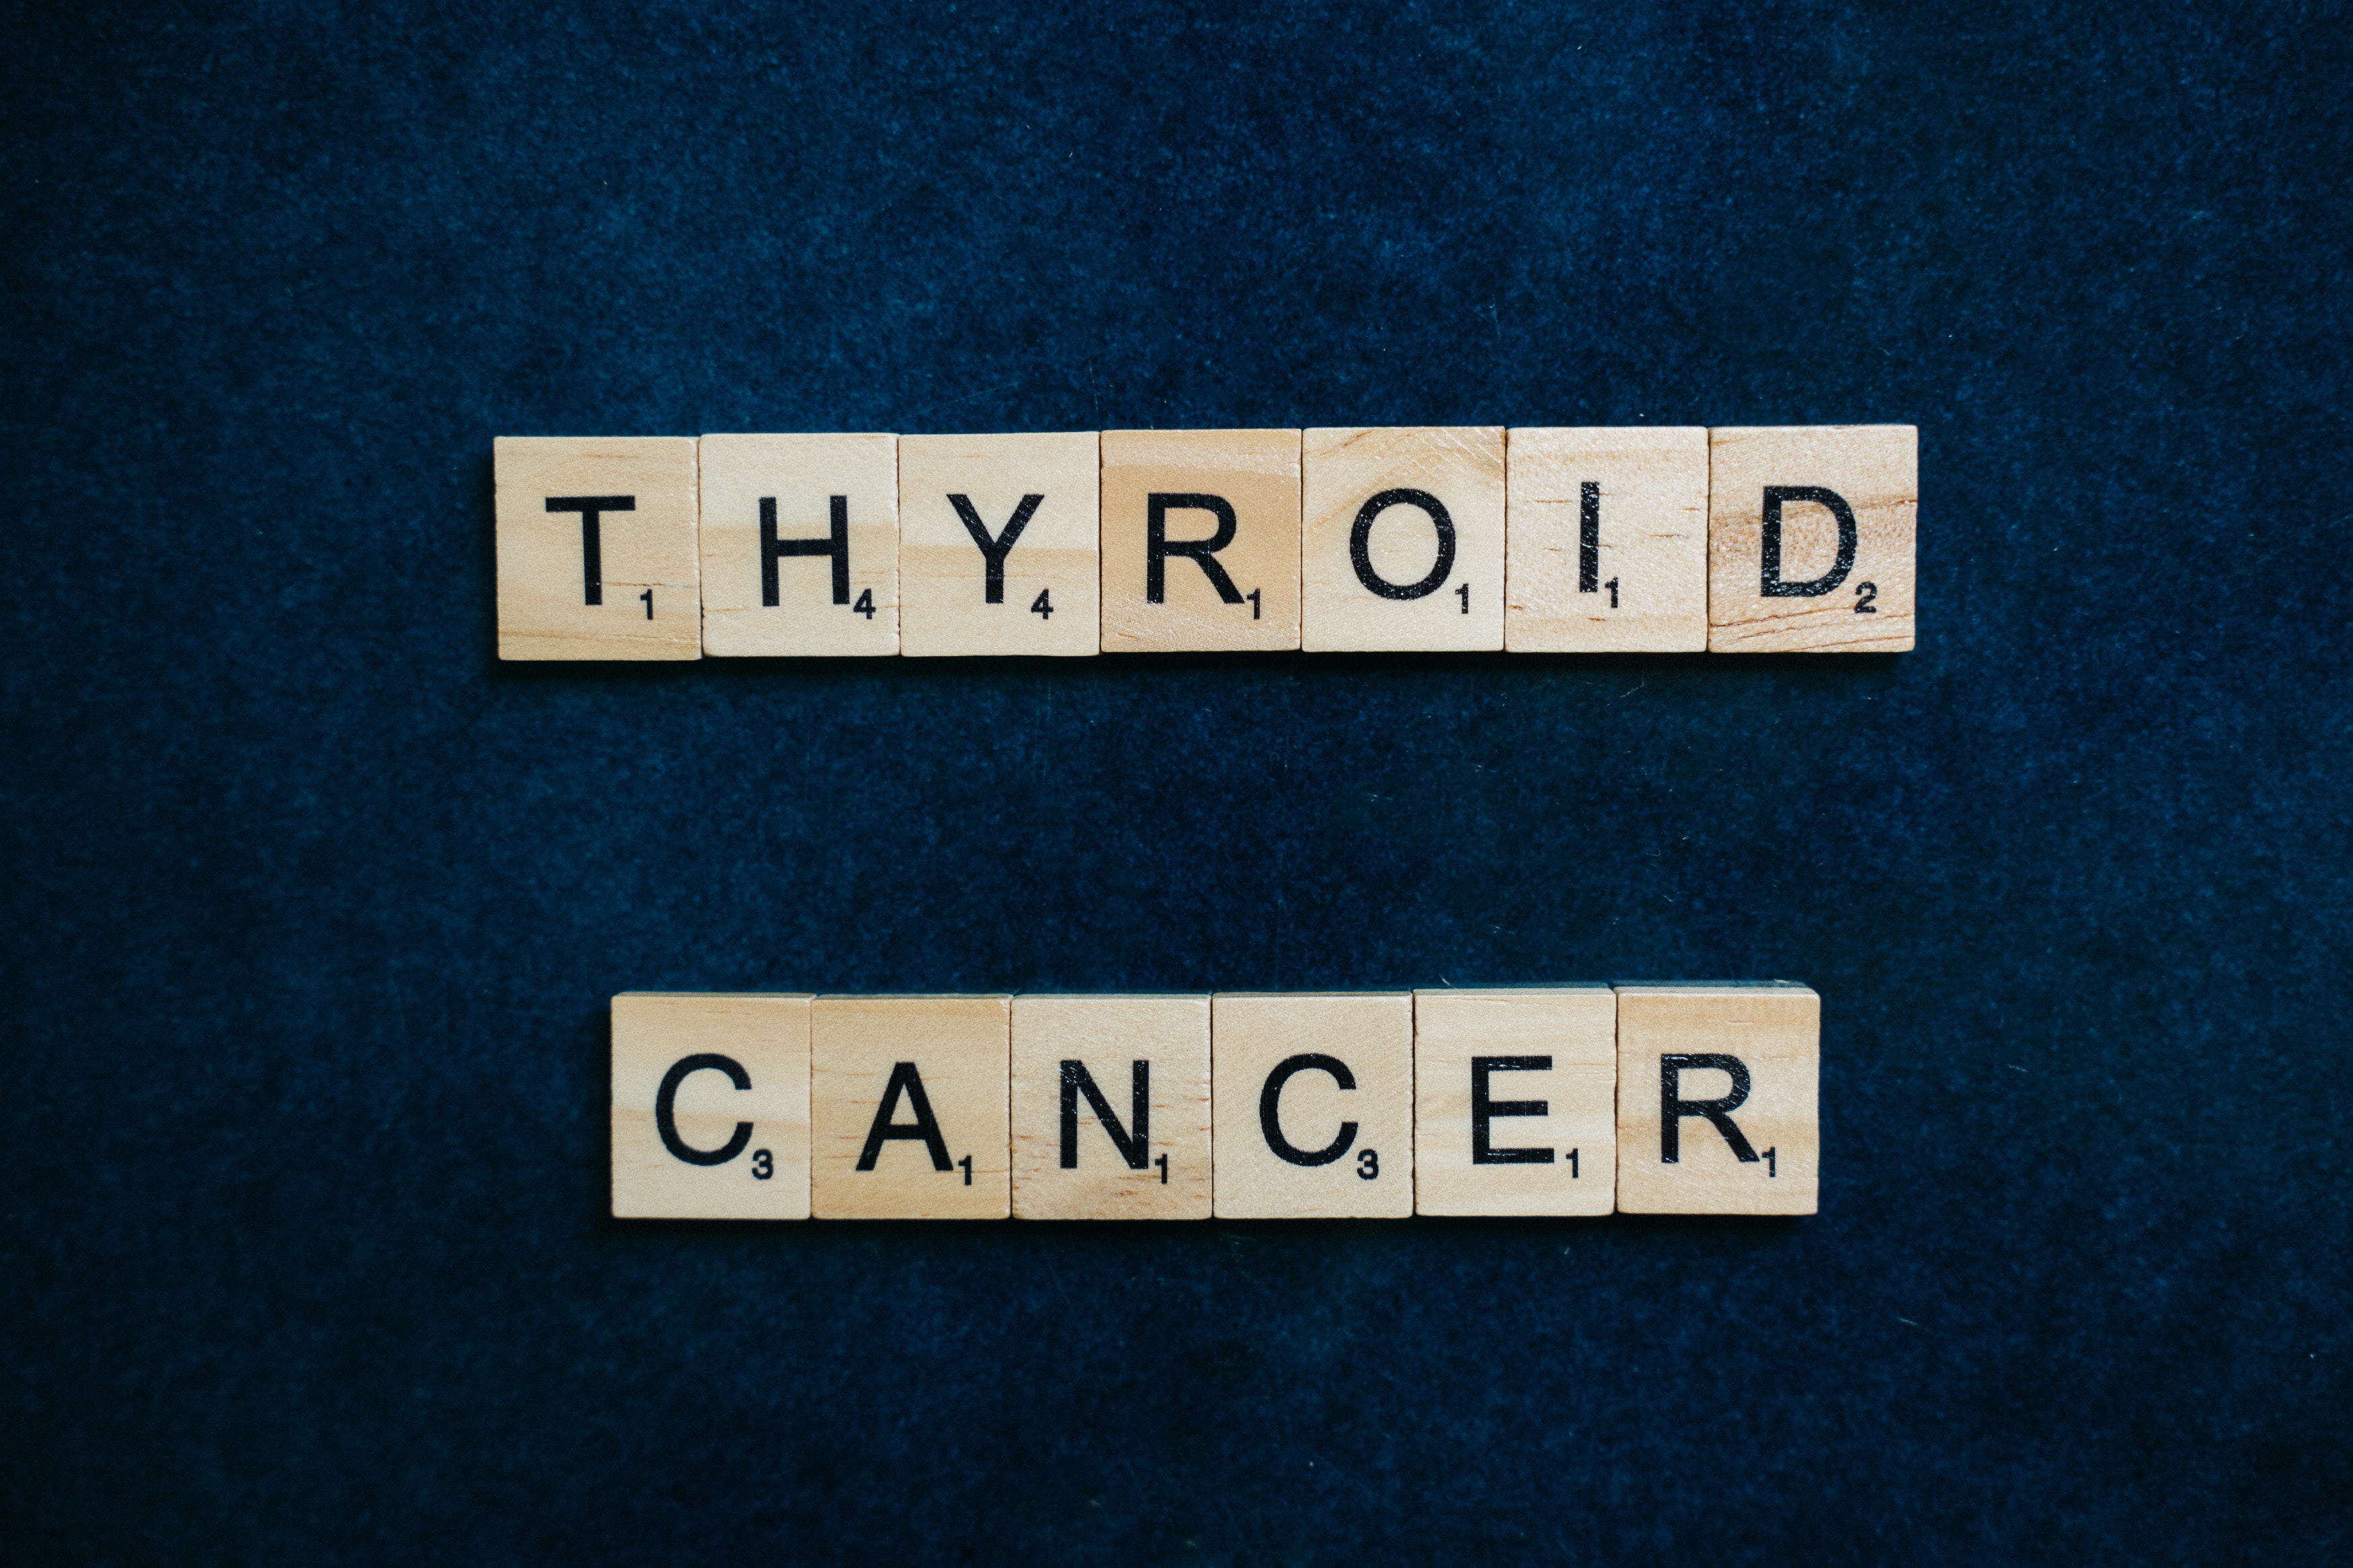 갑상선암 / thyroid cancer